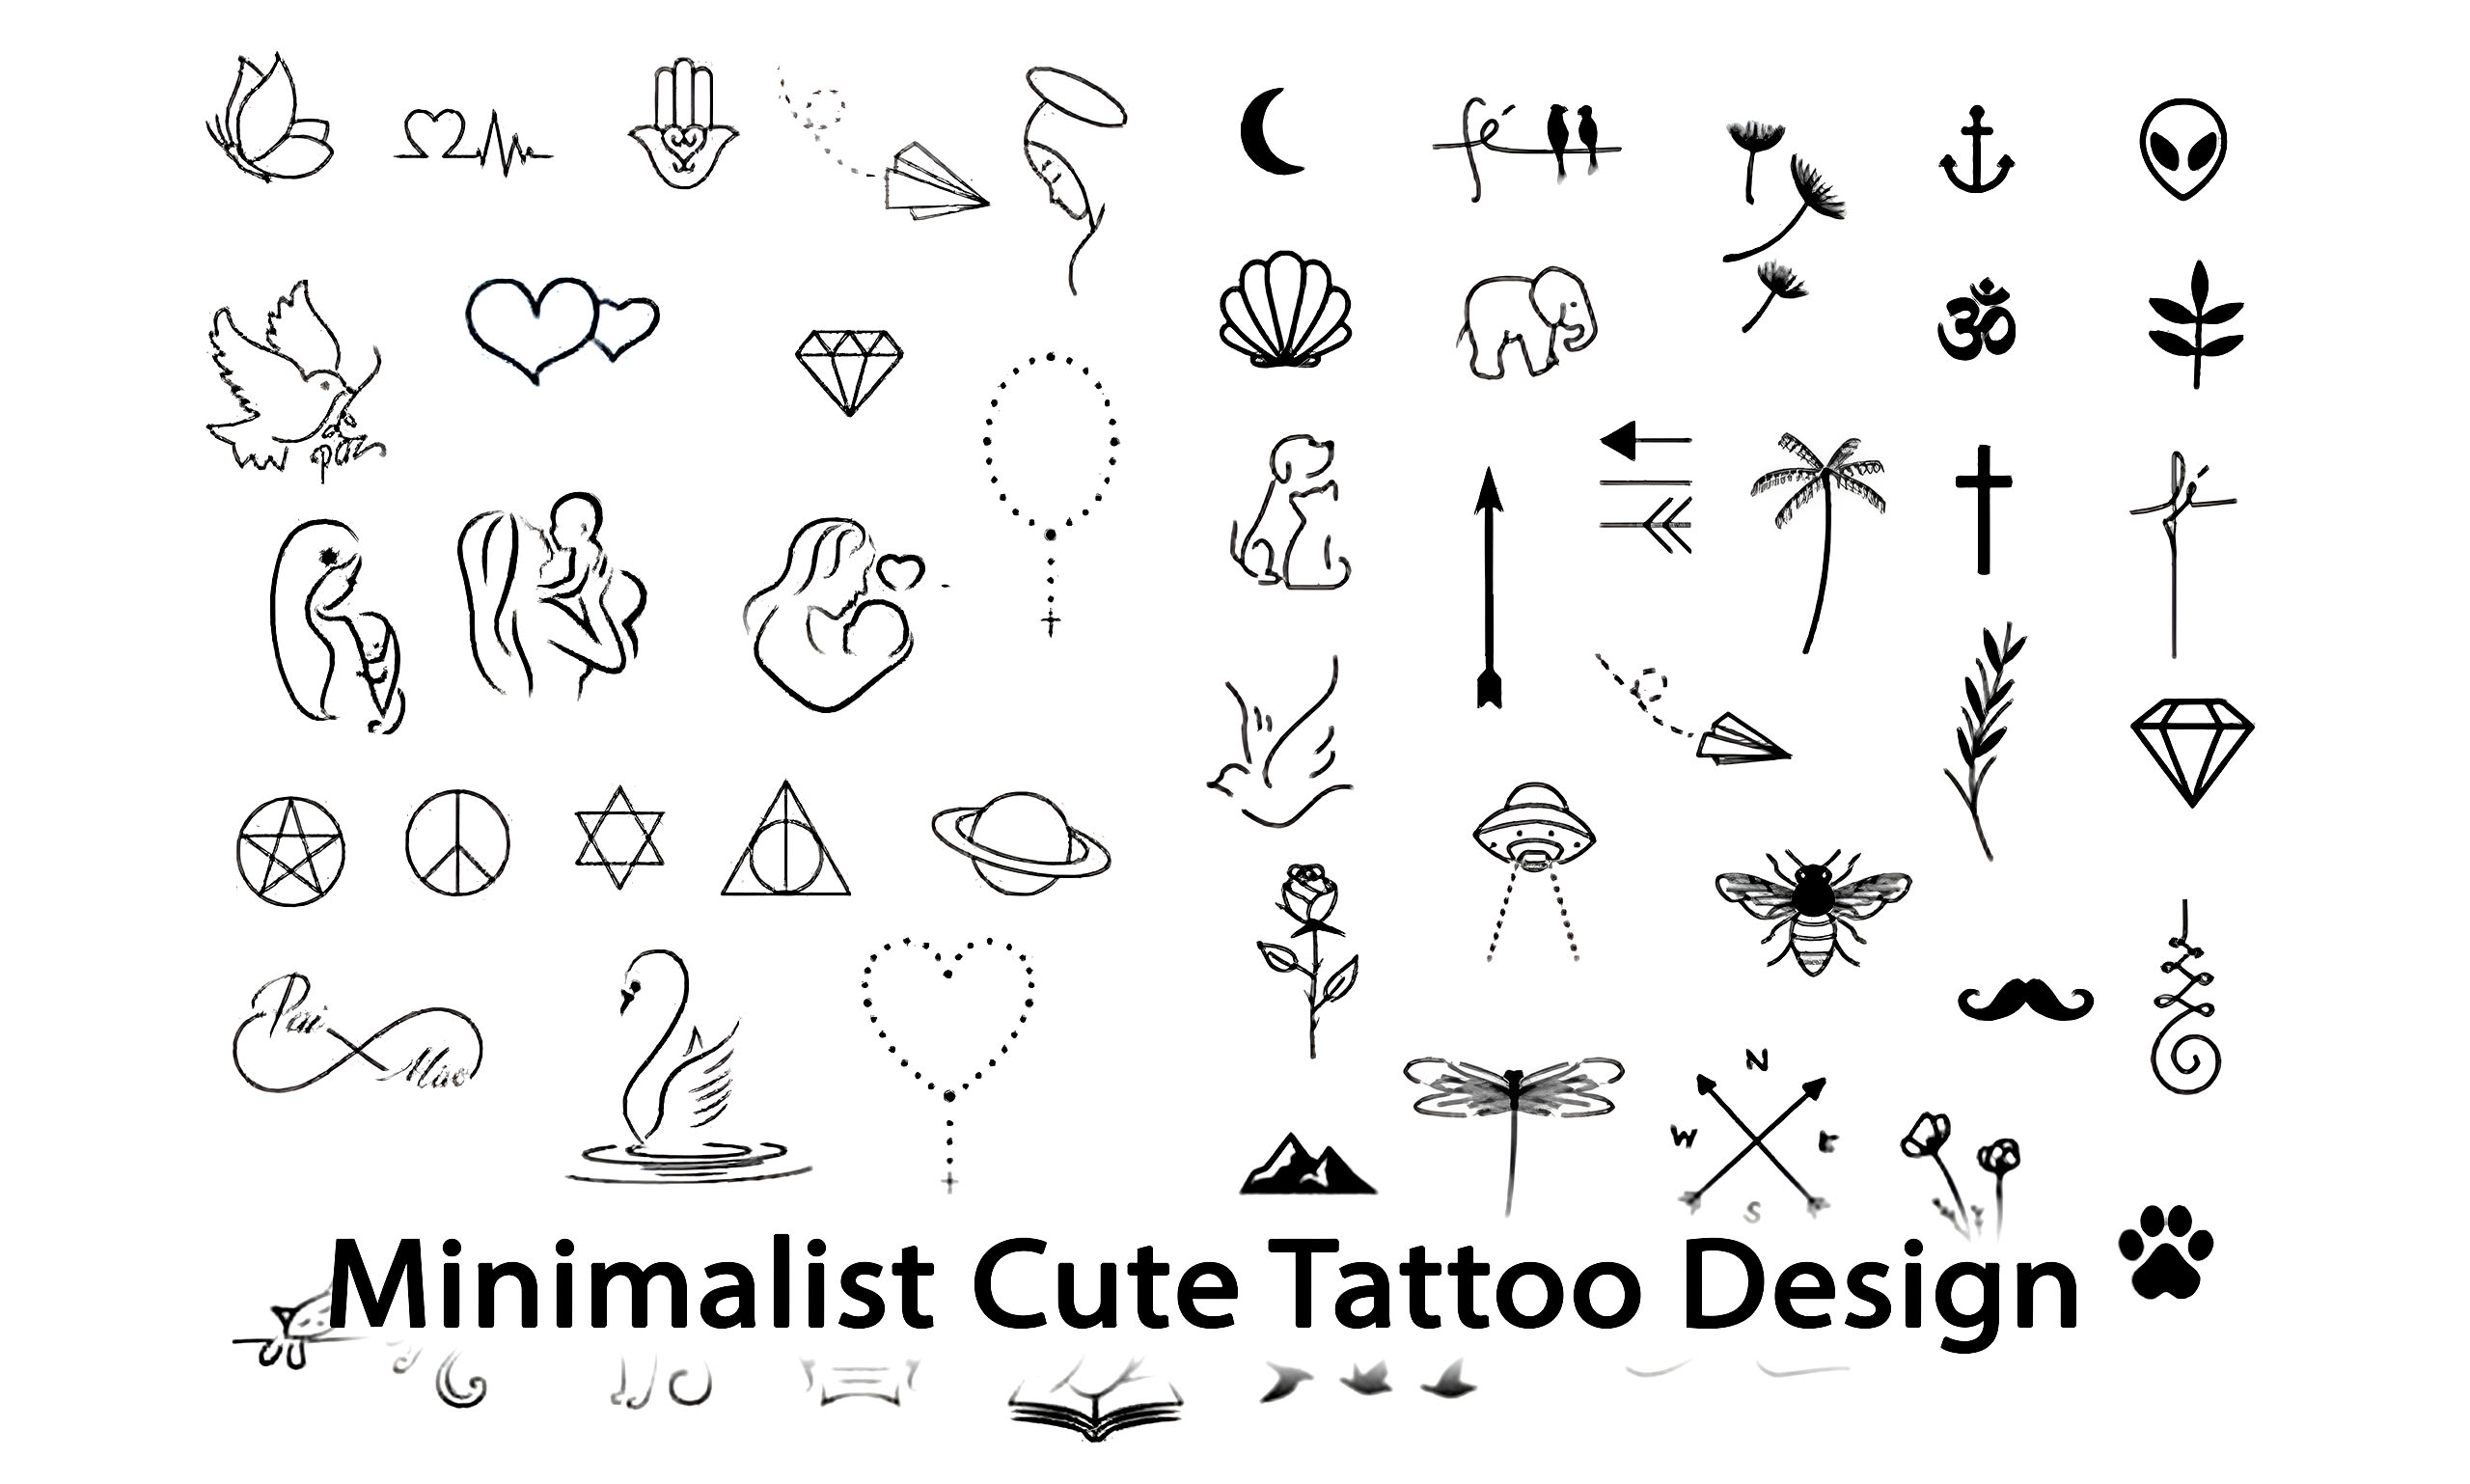 Pin on Tattoo ideas & design